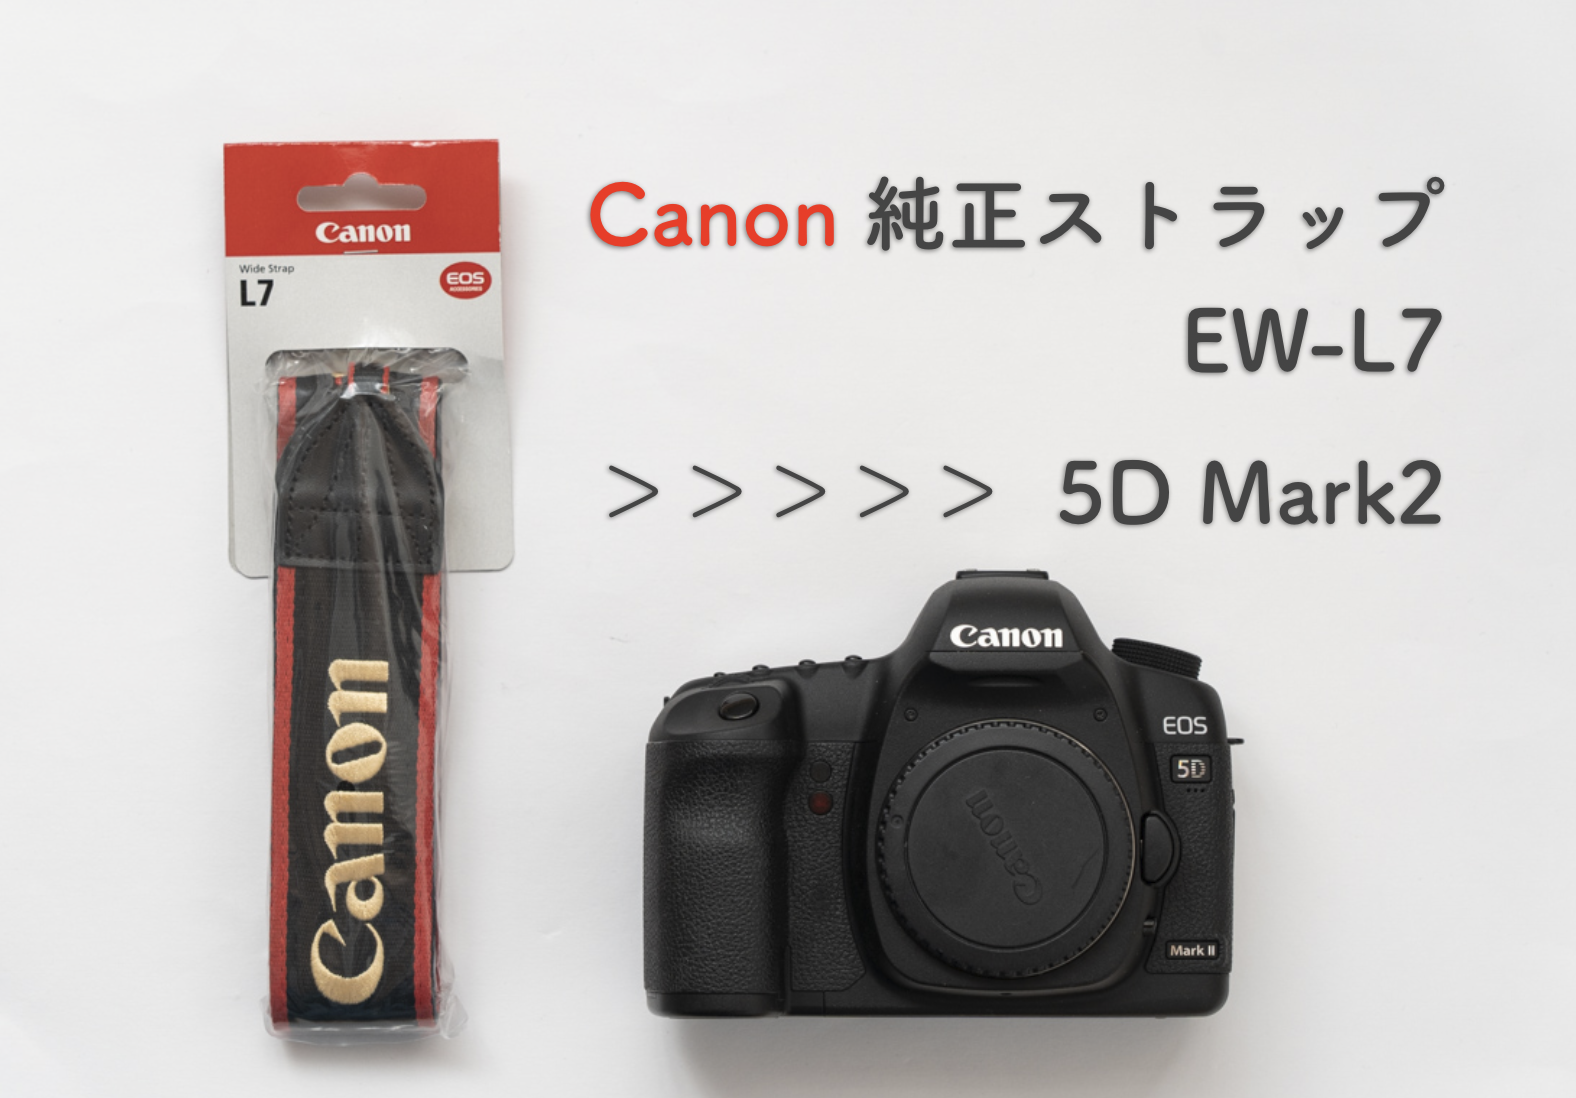 中古5D mark2にCanon純正ワイドストラップ L7(EW-L7)を購入。使用感 